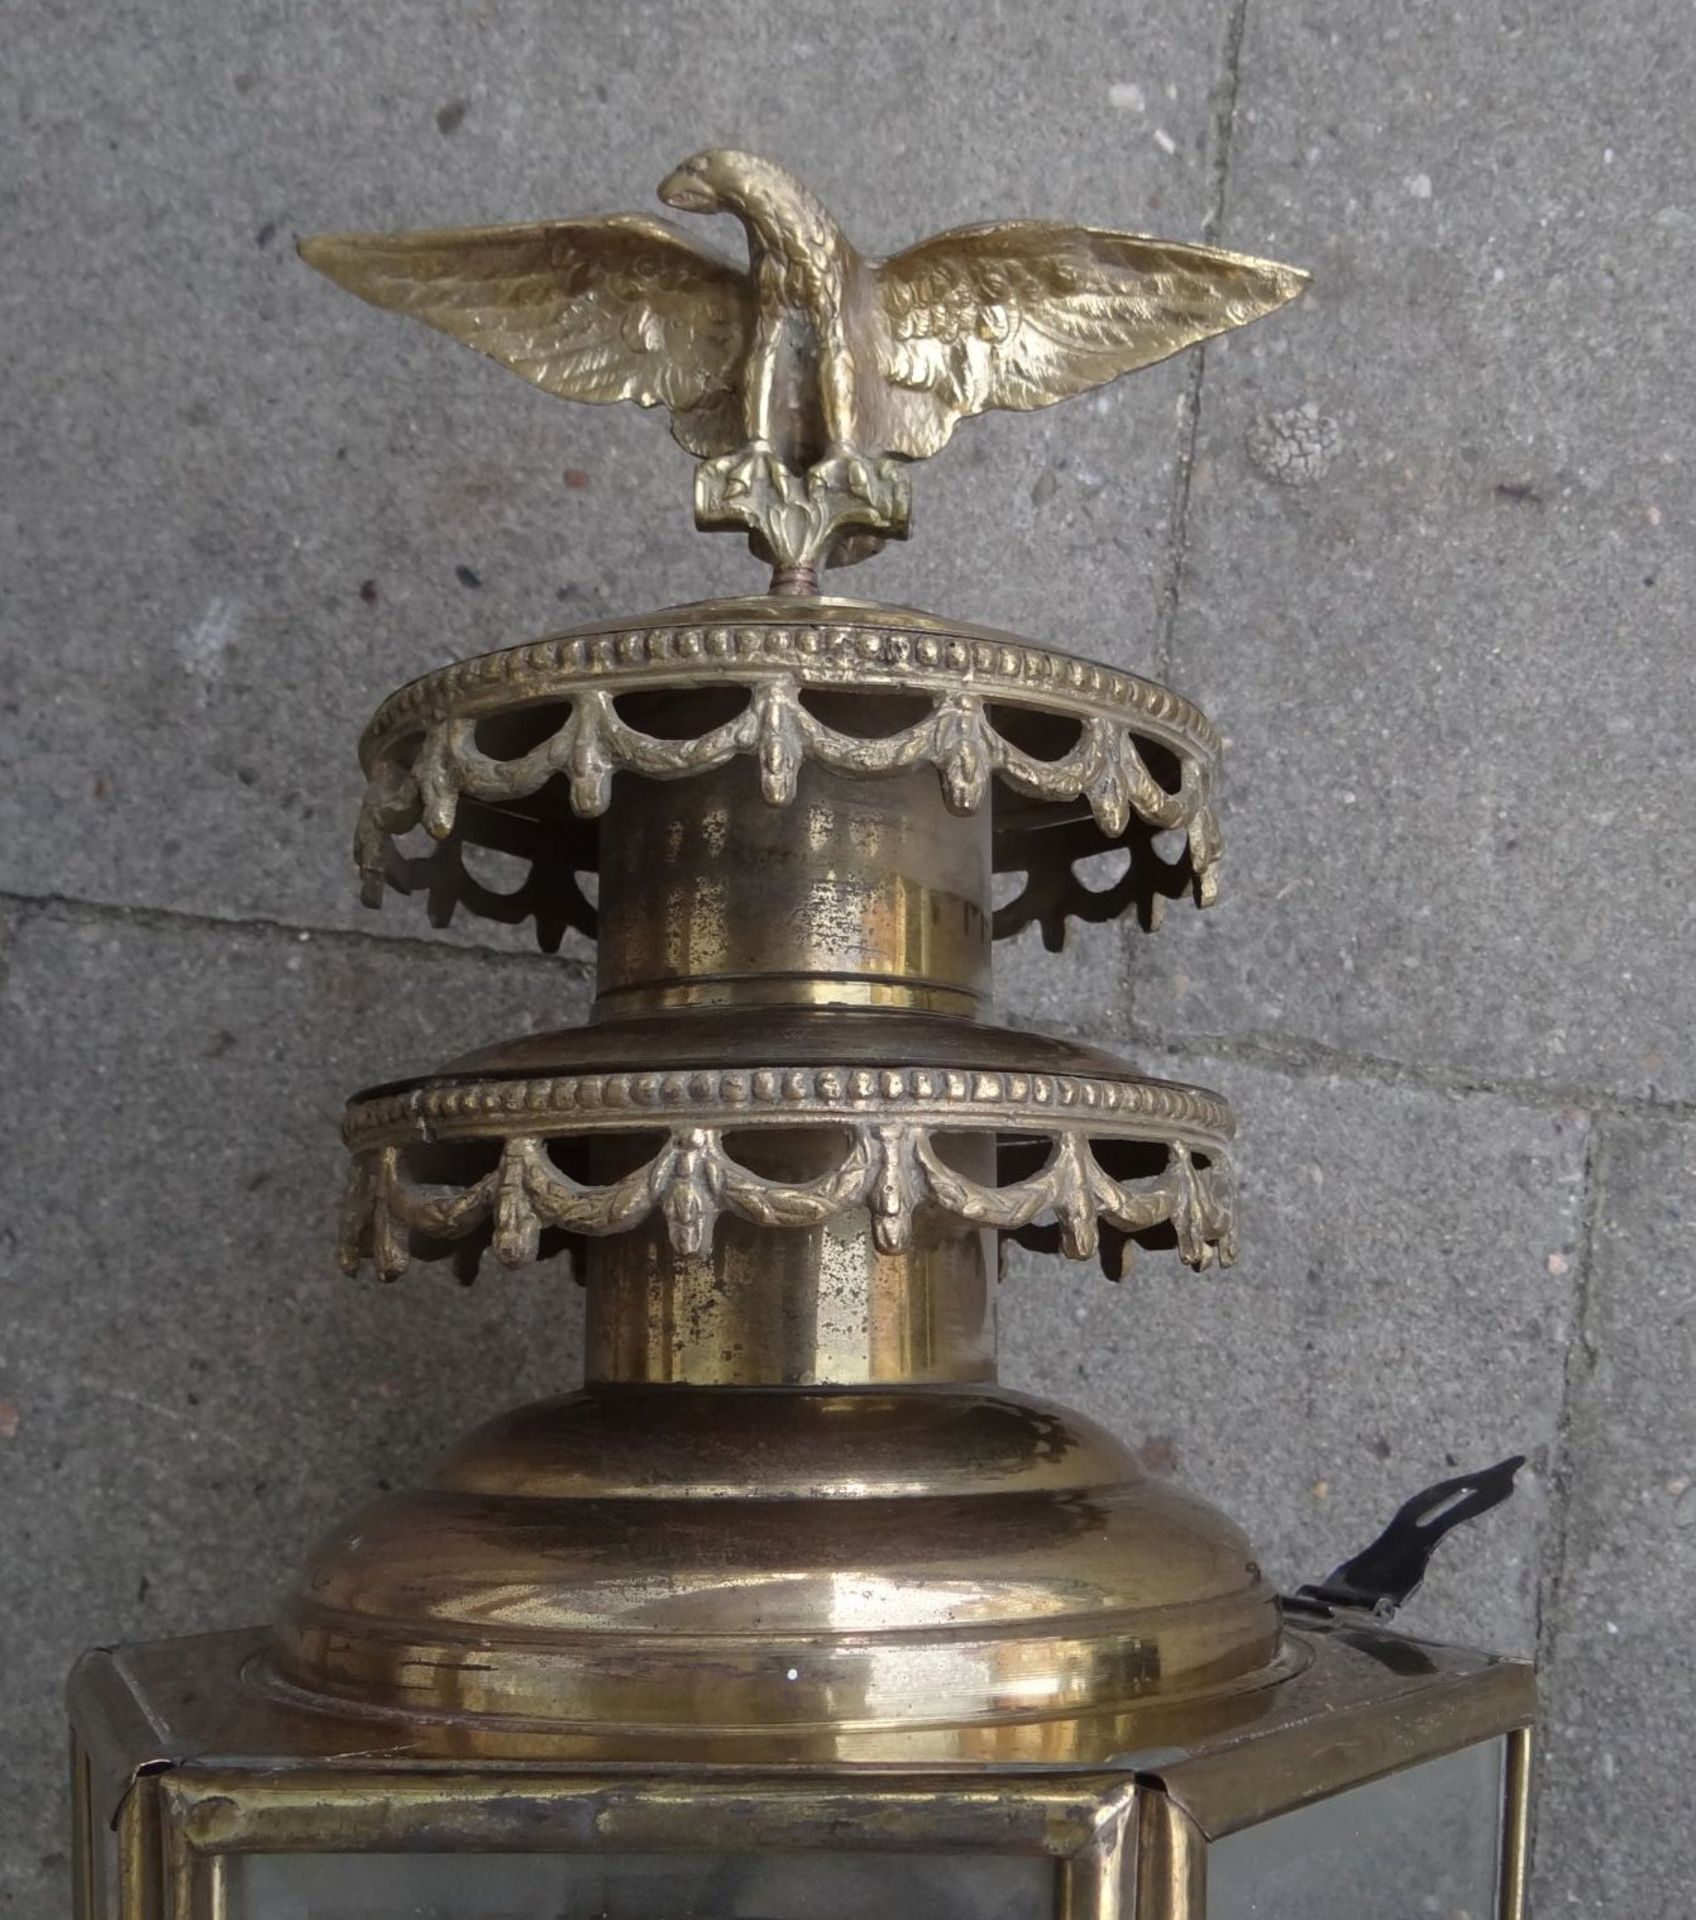 grosse, massive Kutschenlampe, Messing/Bronze, H-75 cm, B-28 cm, elektrisch, guter Zustand - Bild 3 aus 9